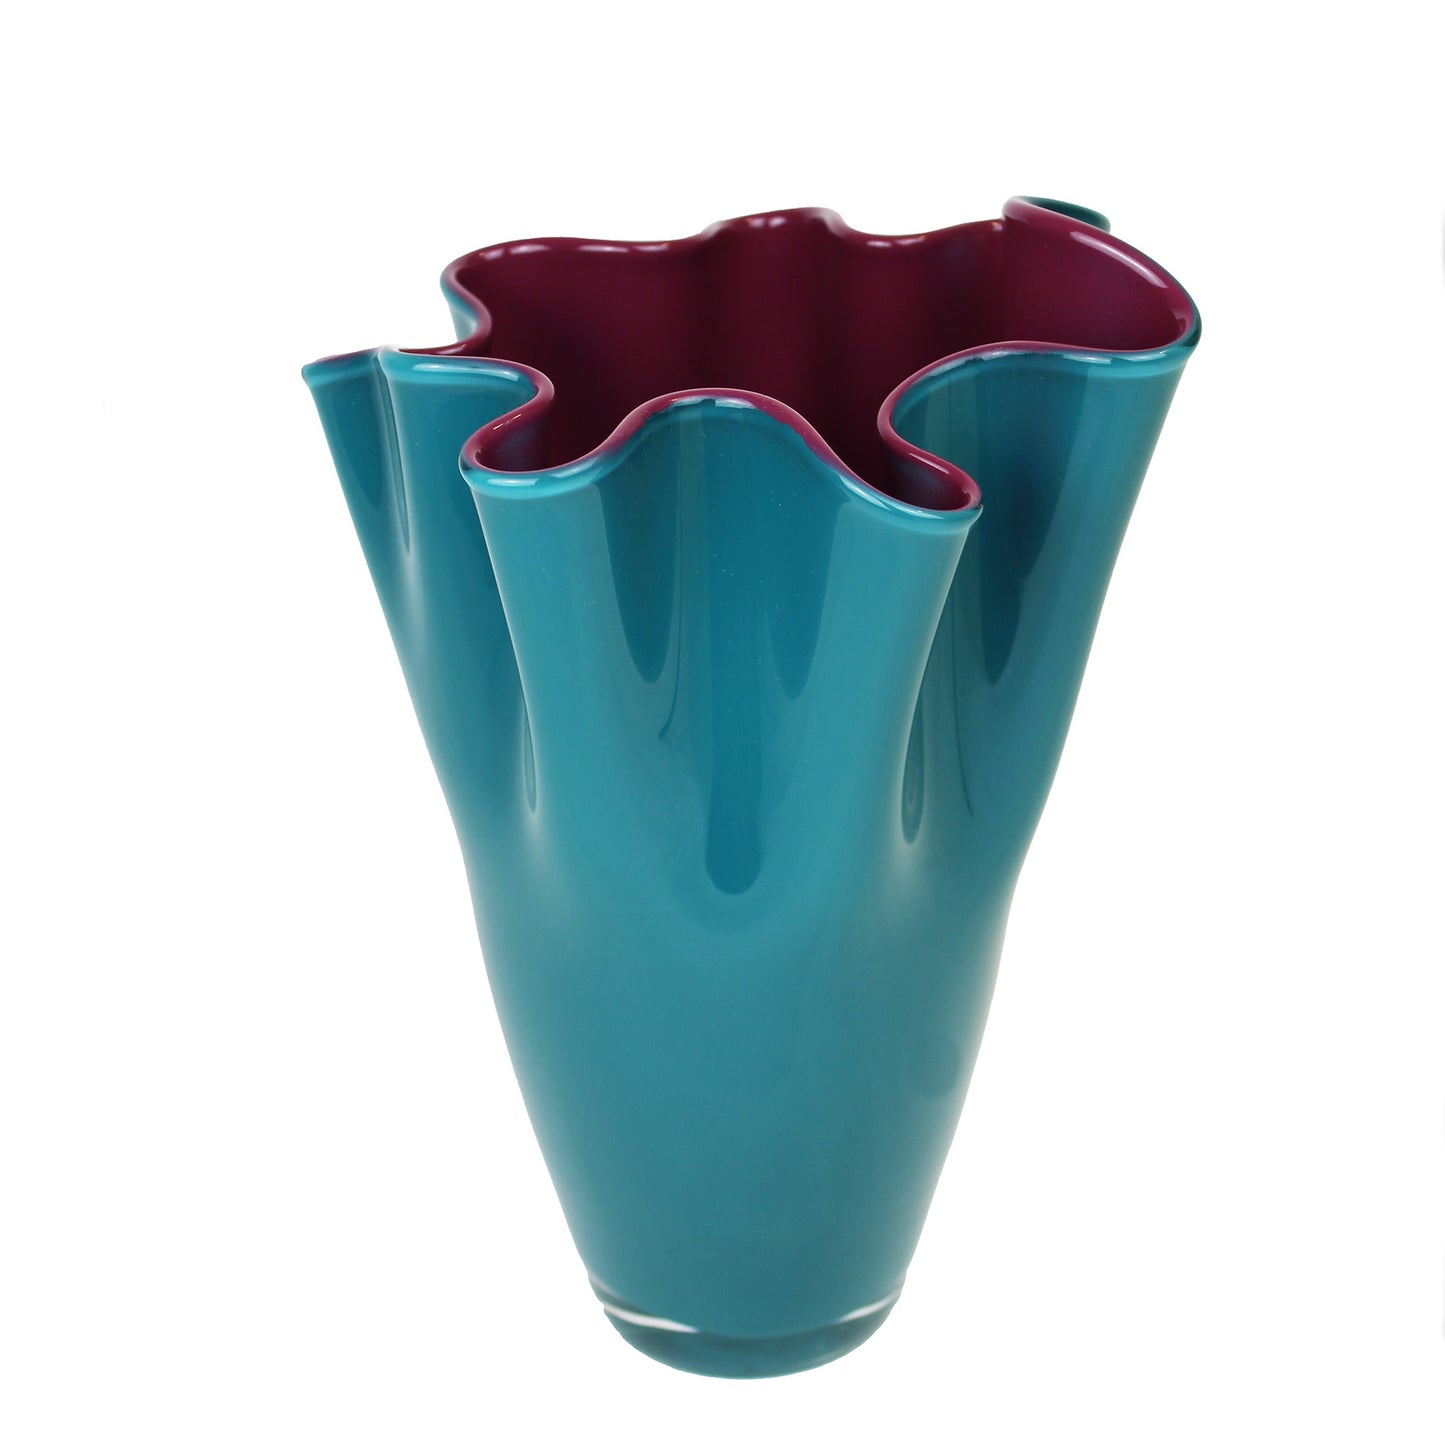 zweifarbige Vase in türkis und lila Glas mit gewelltem Rand